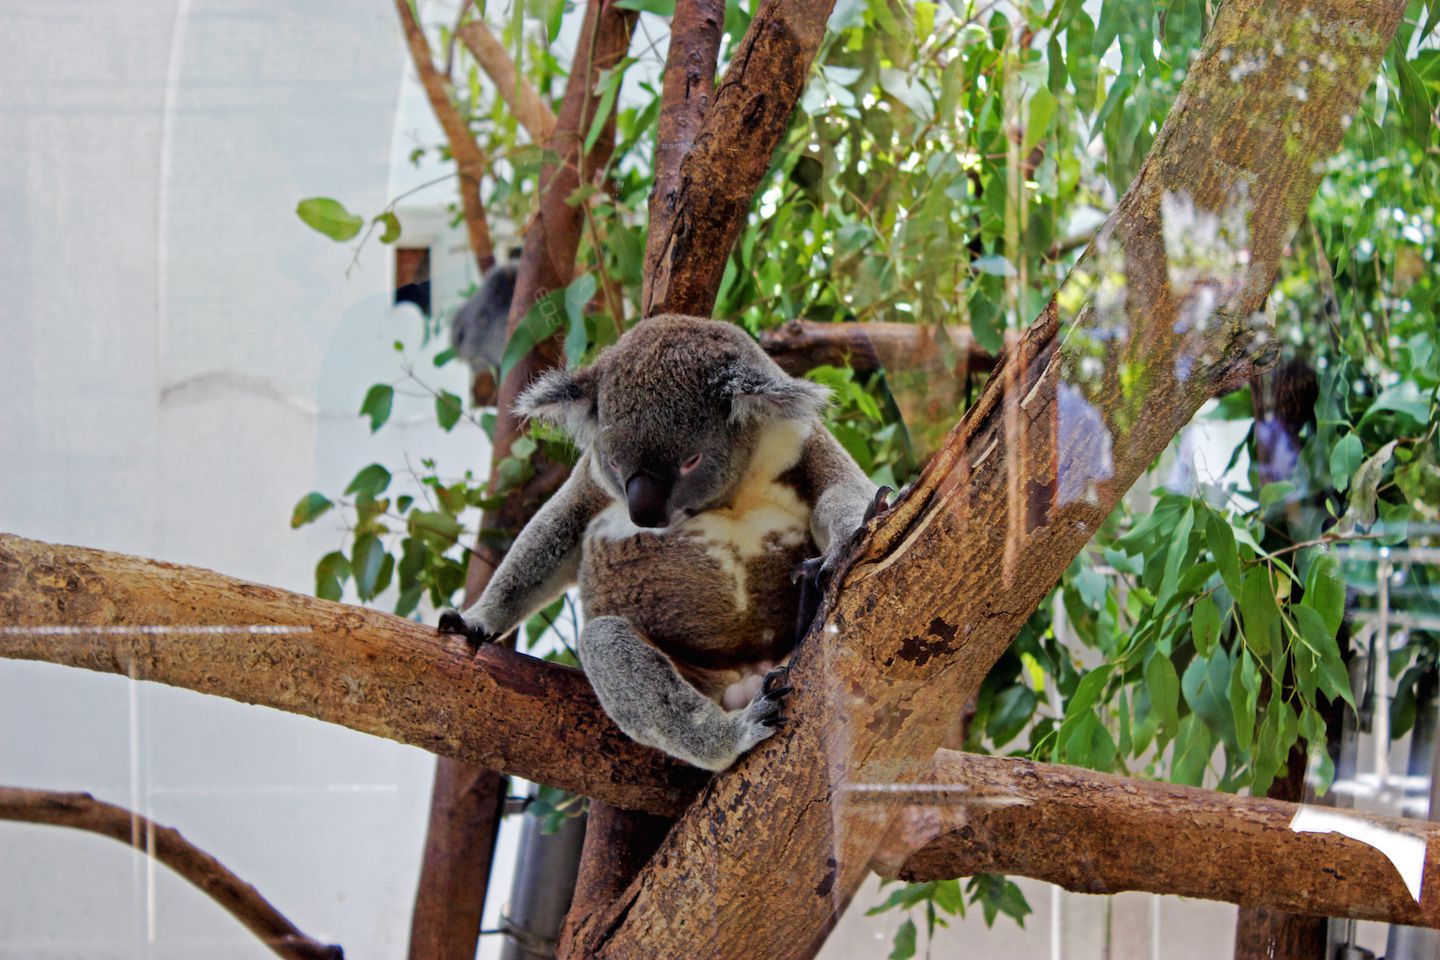 Cute koala sitting on a tree branch